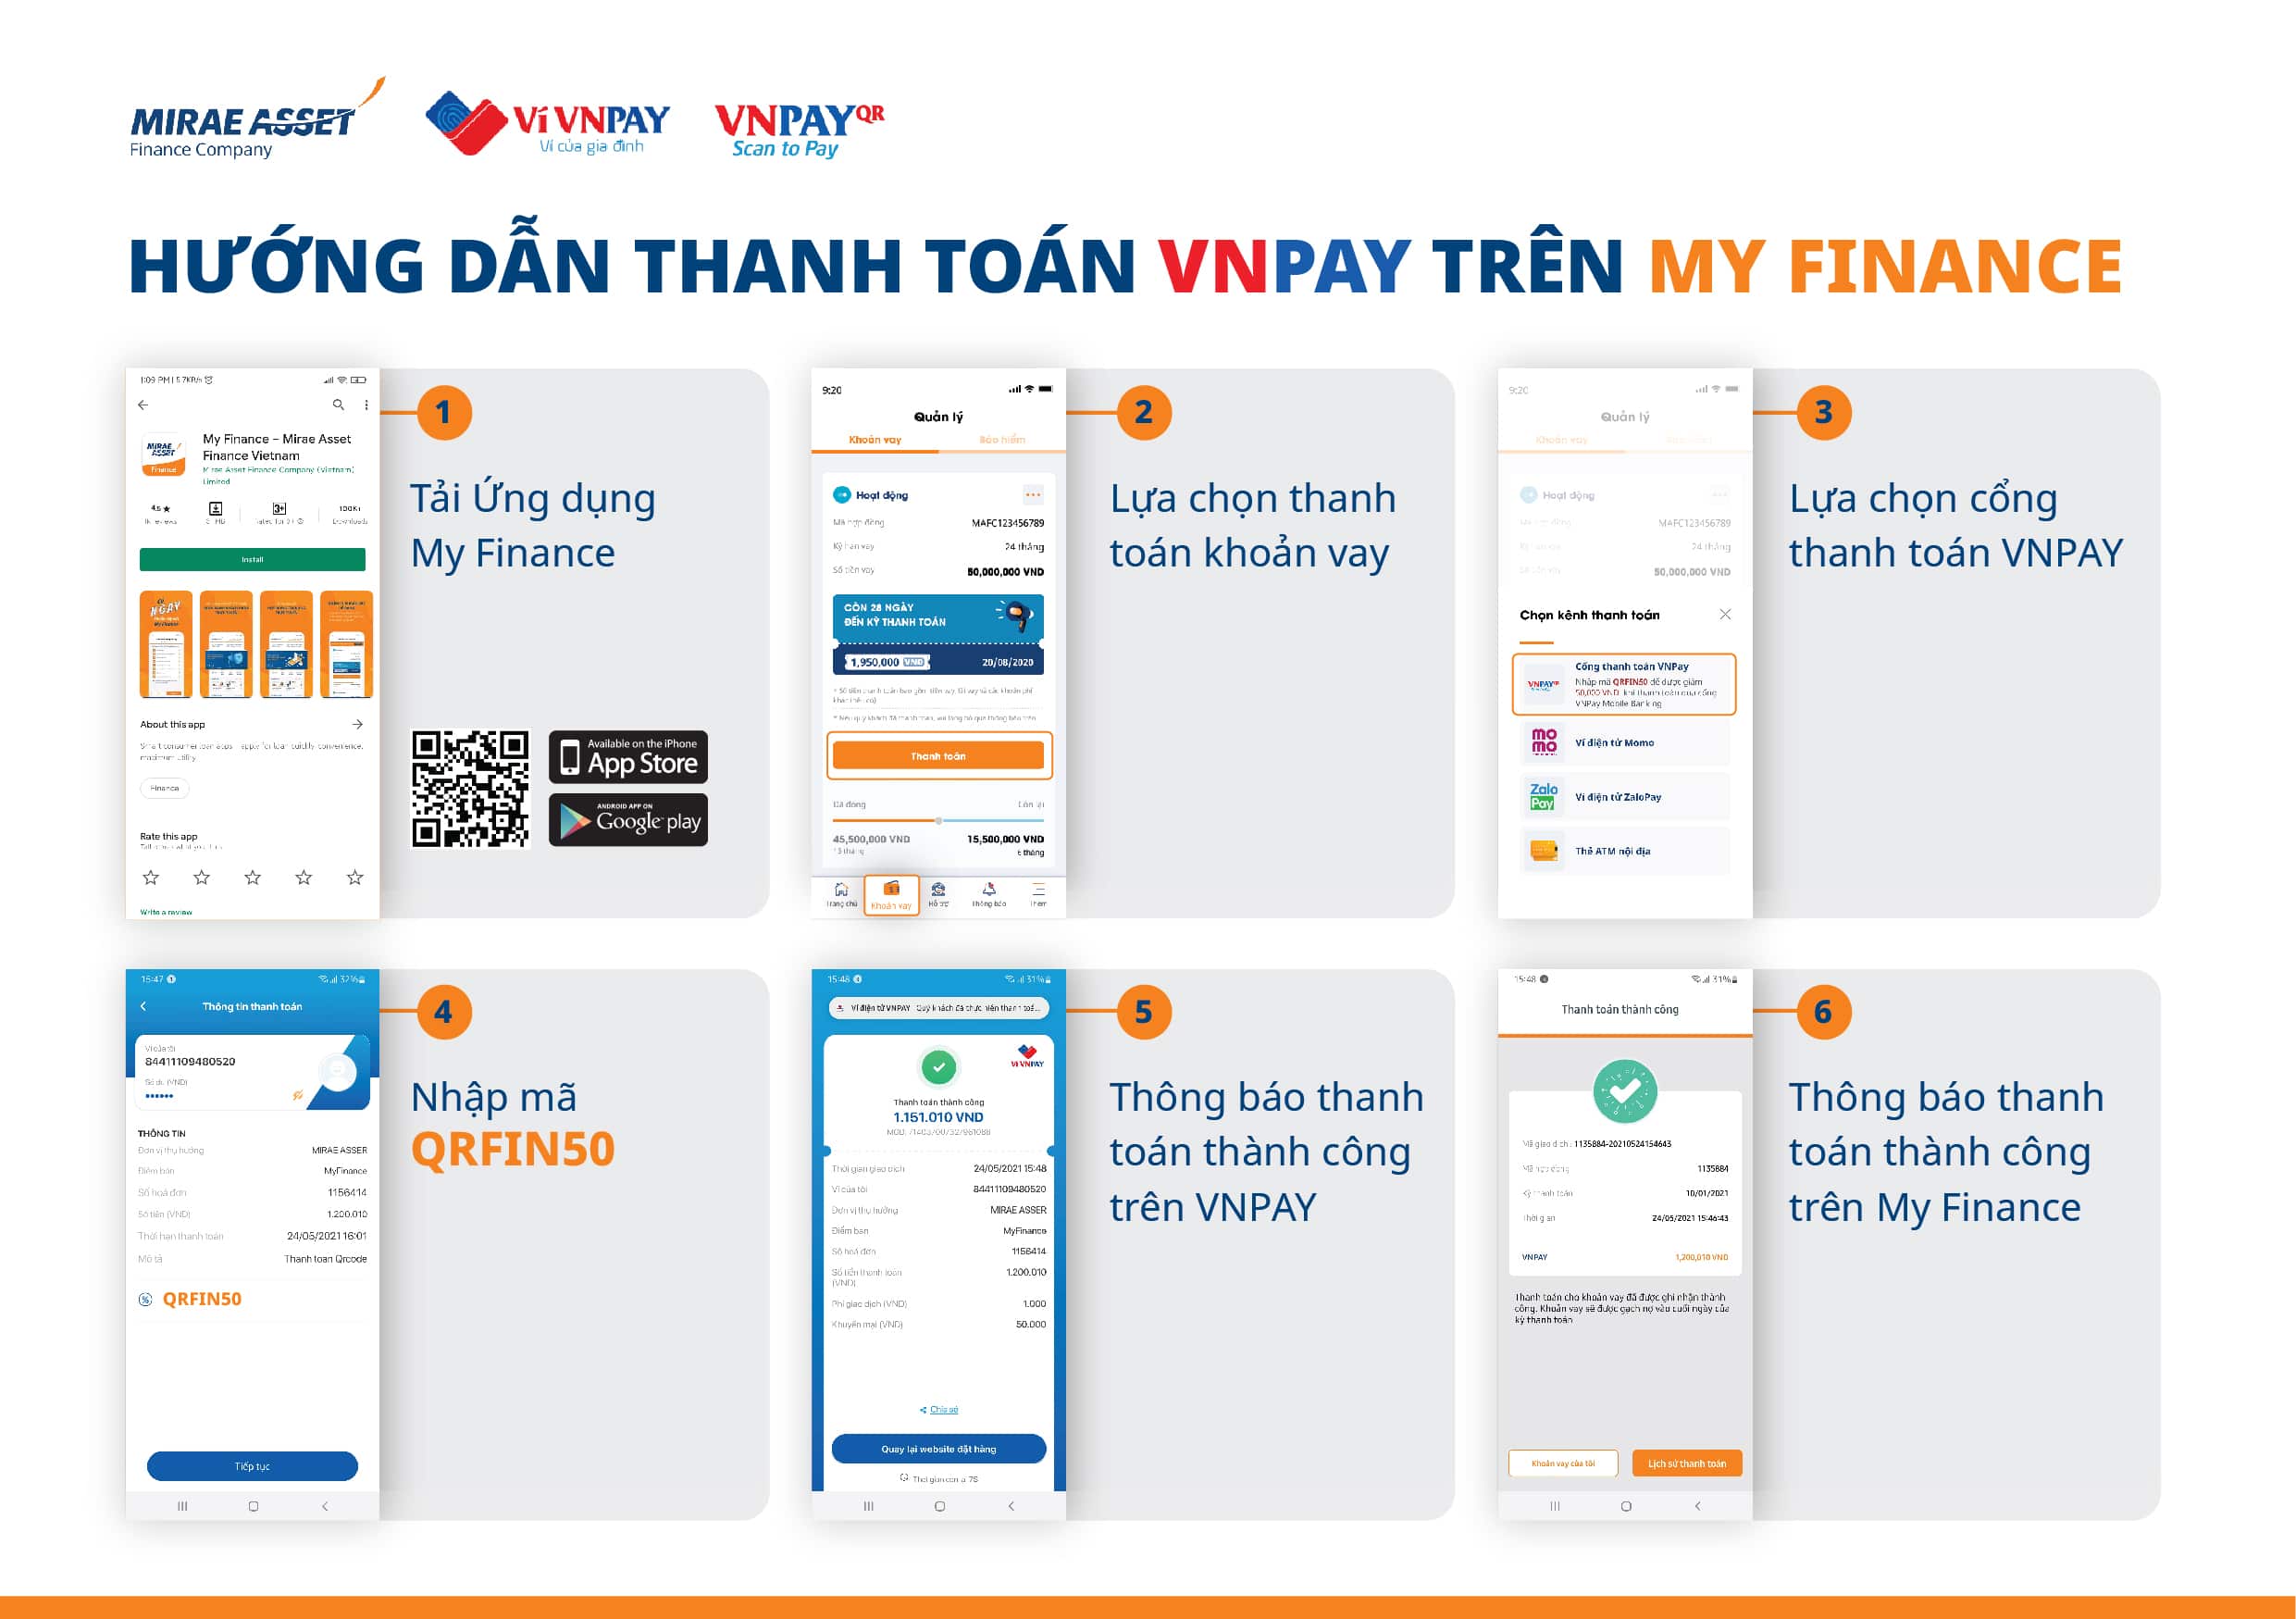 Guideline thanh toán VNPAy trên My Finance